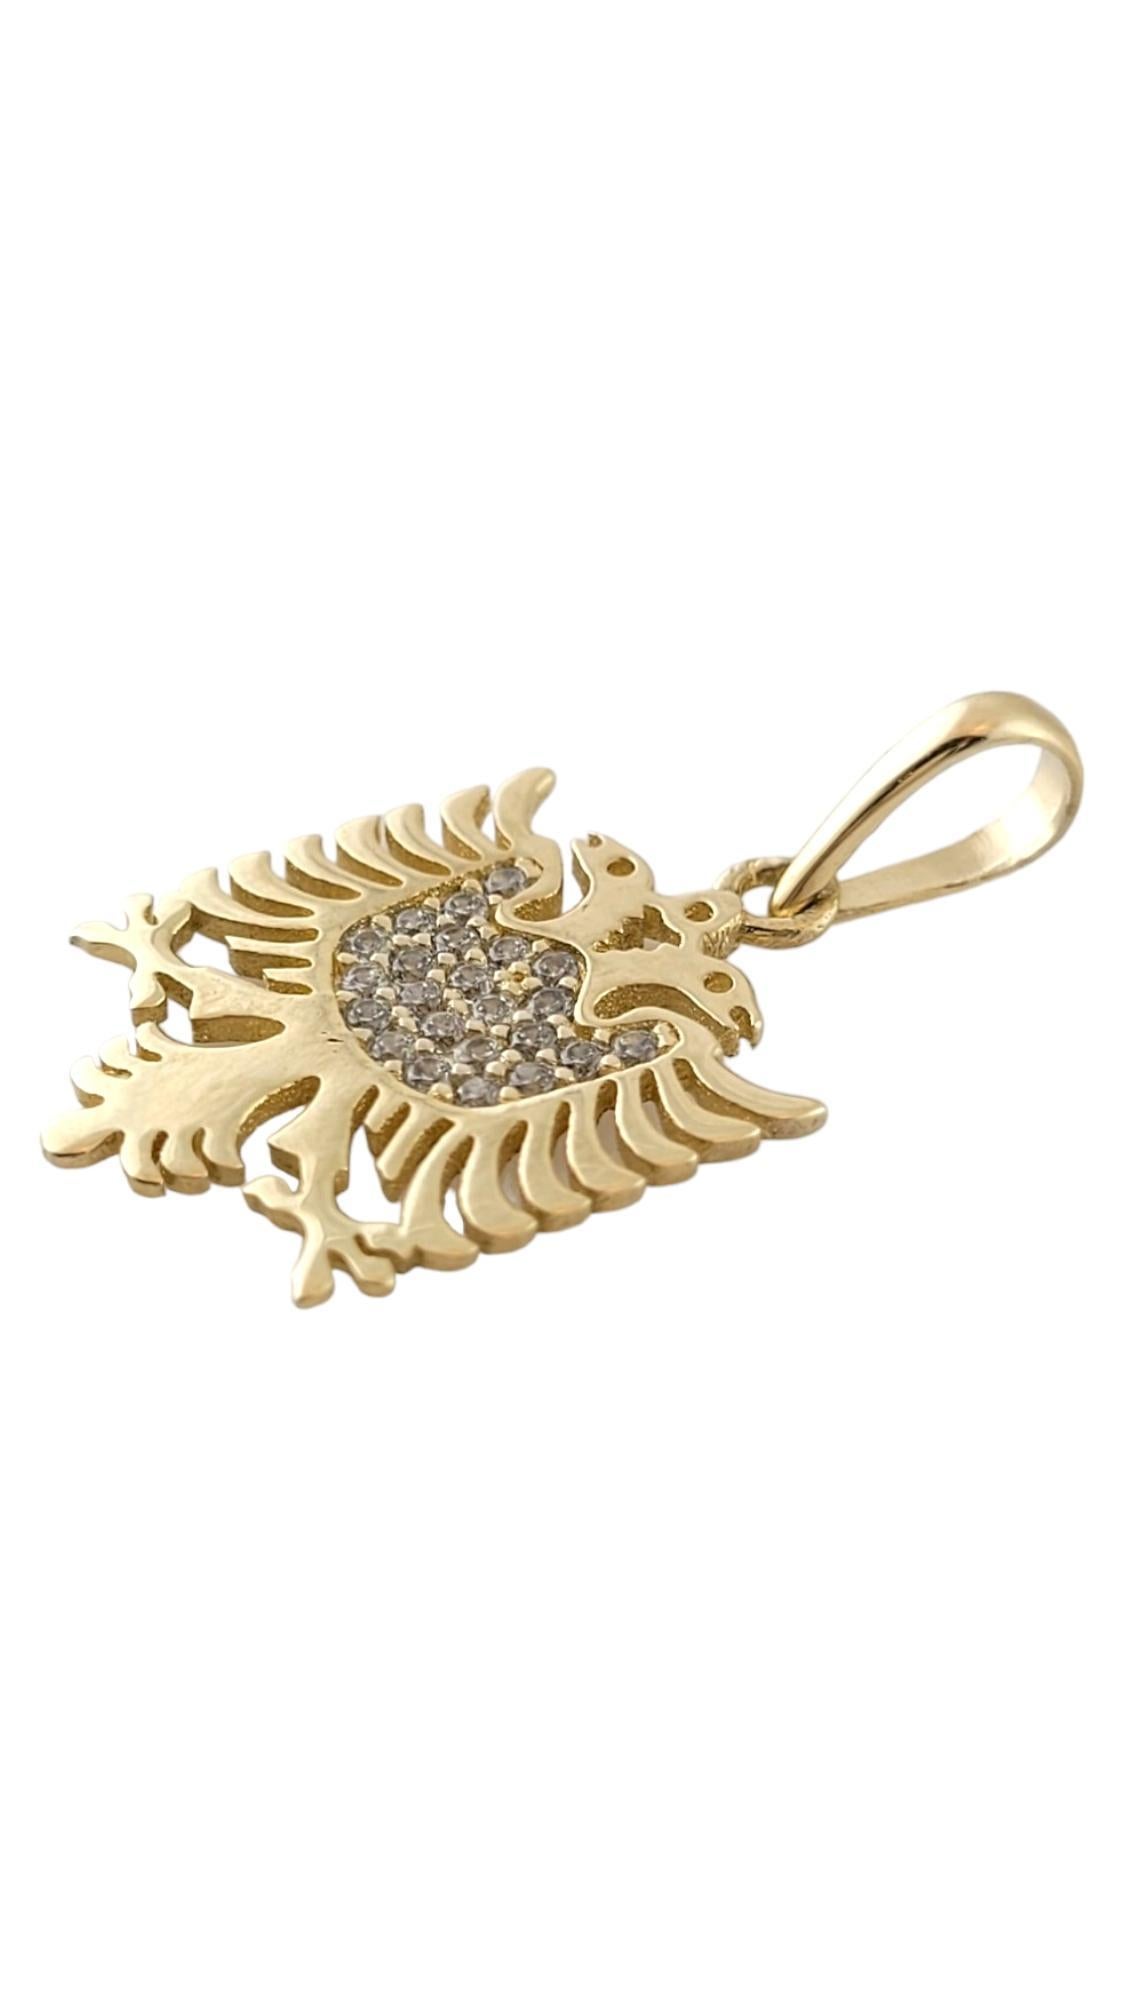 14k gold albanian eagle pendant